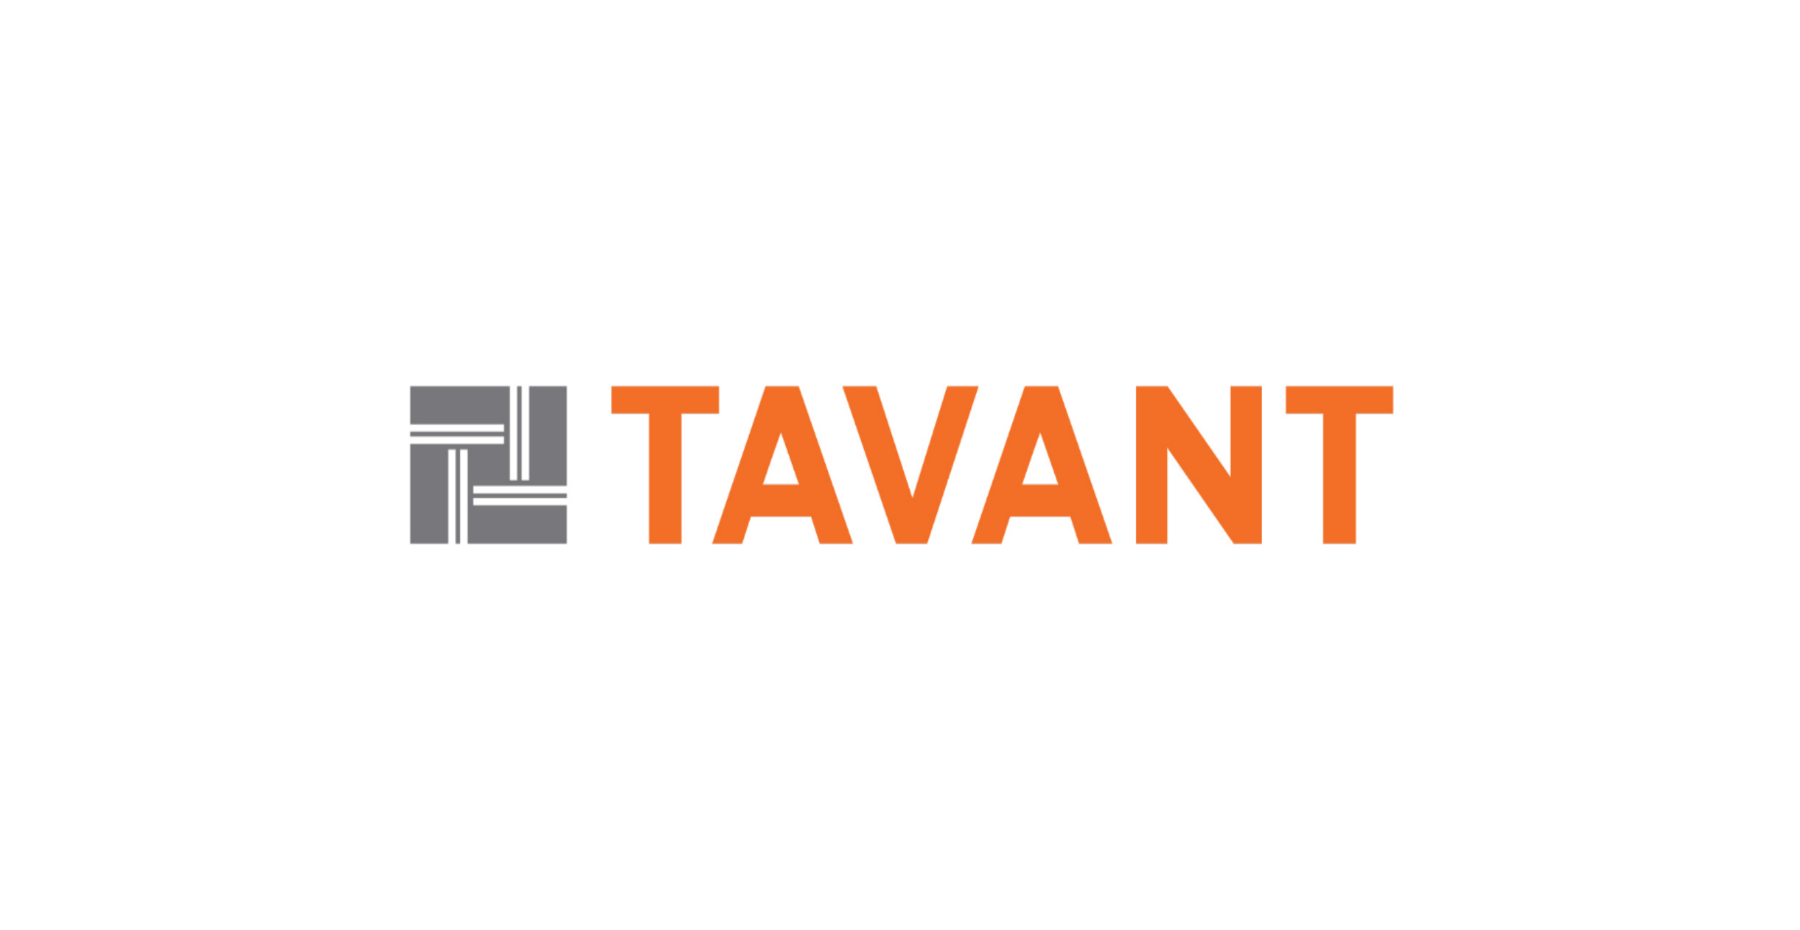 tavant logo